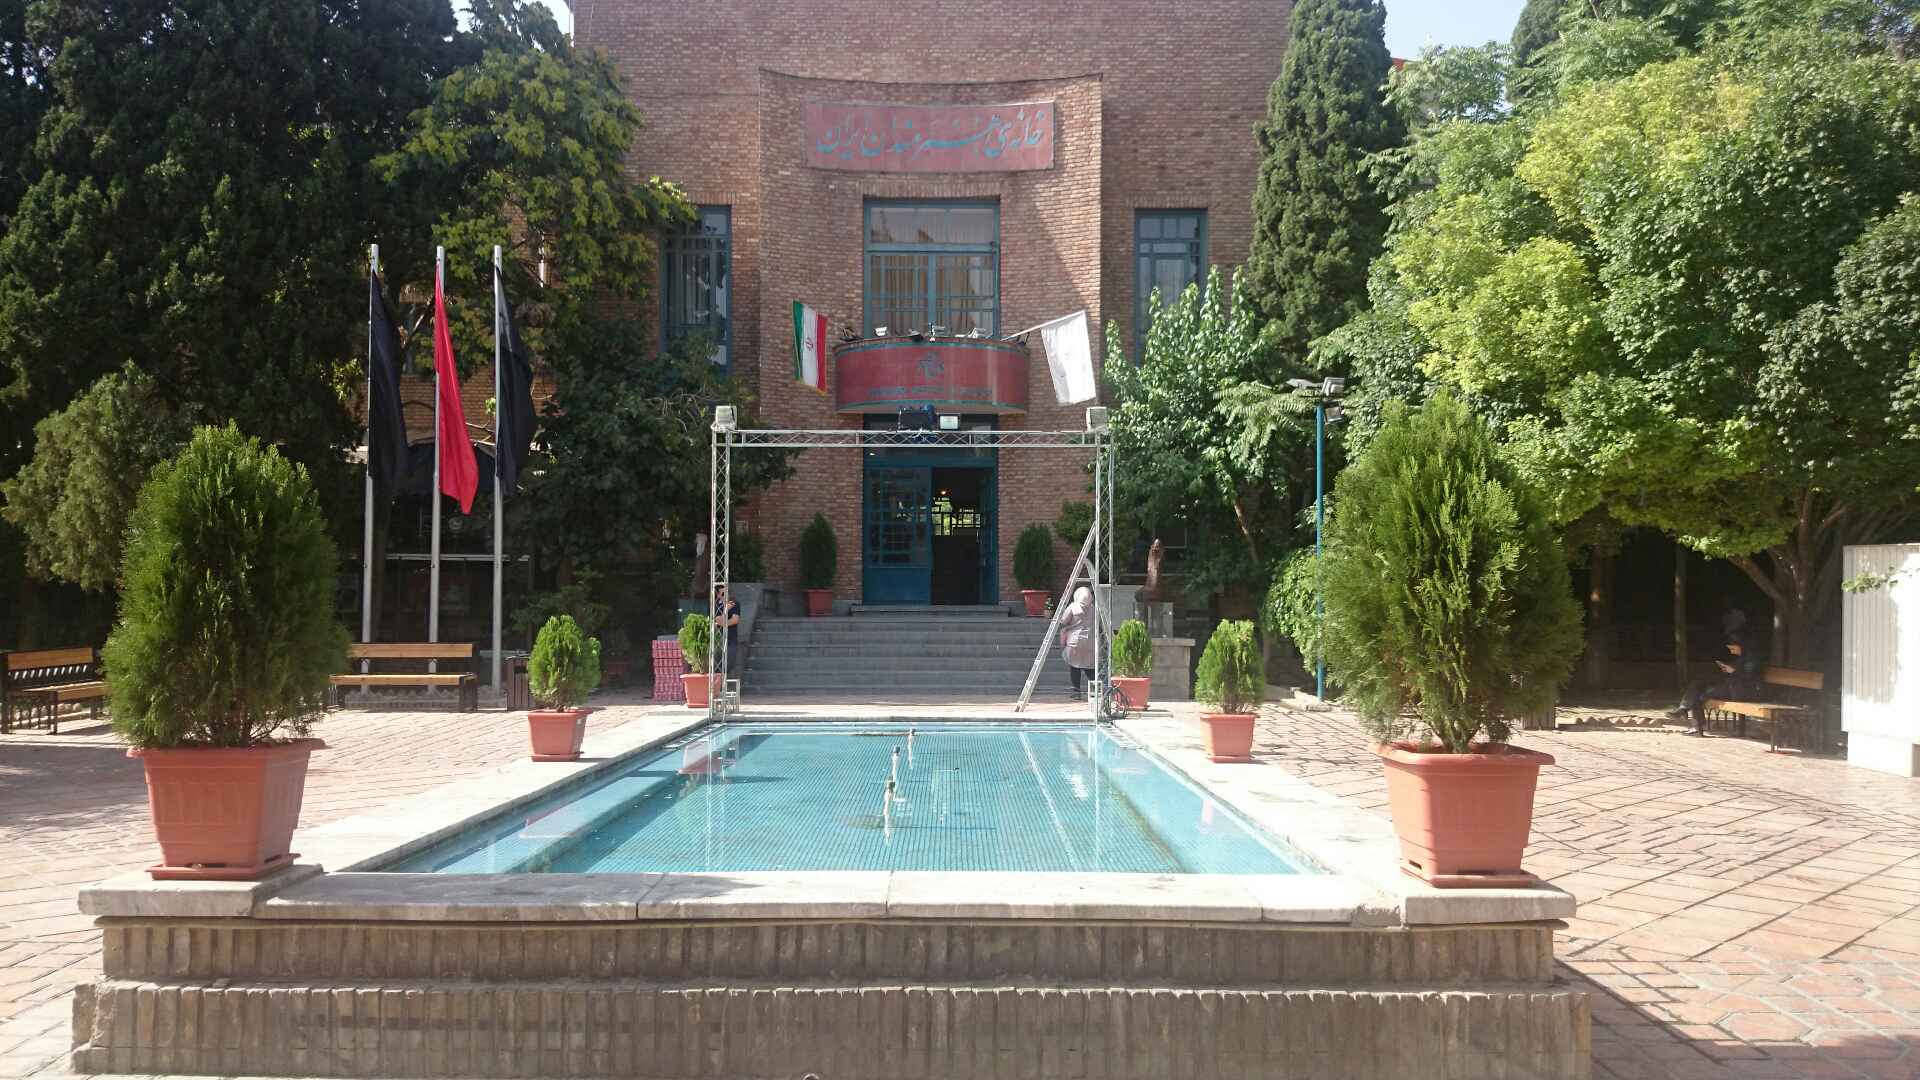 خانه هنرمندان ایران